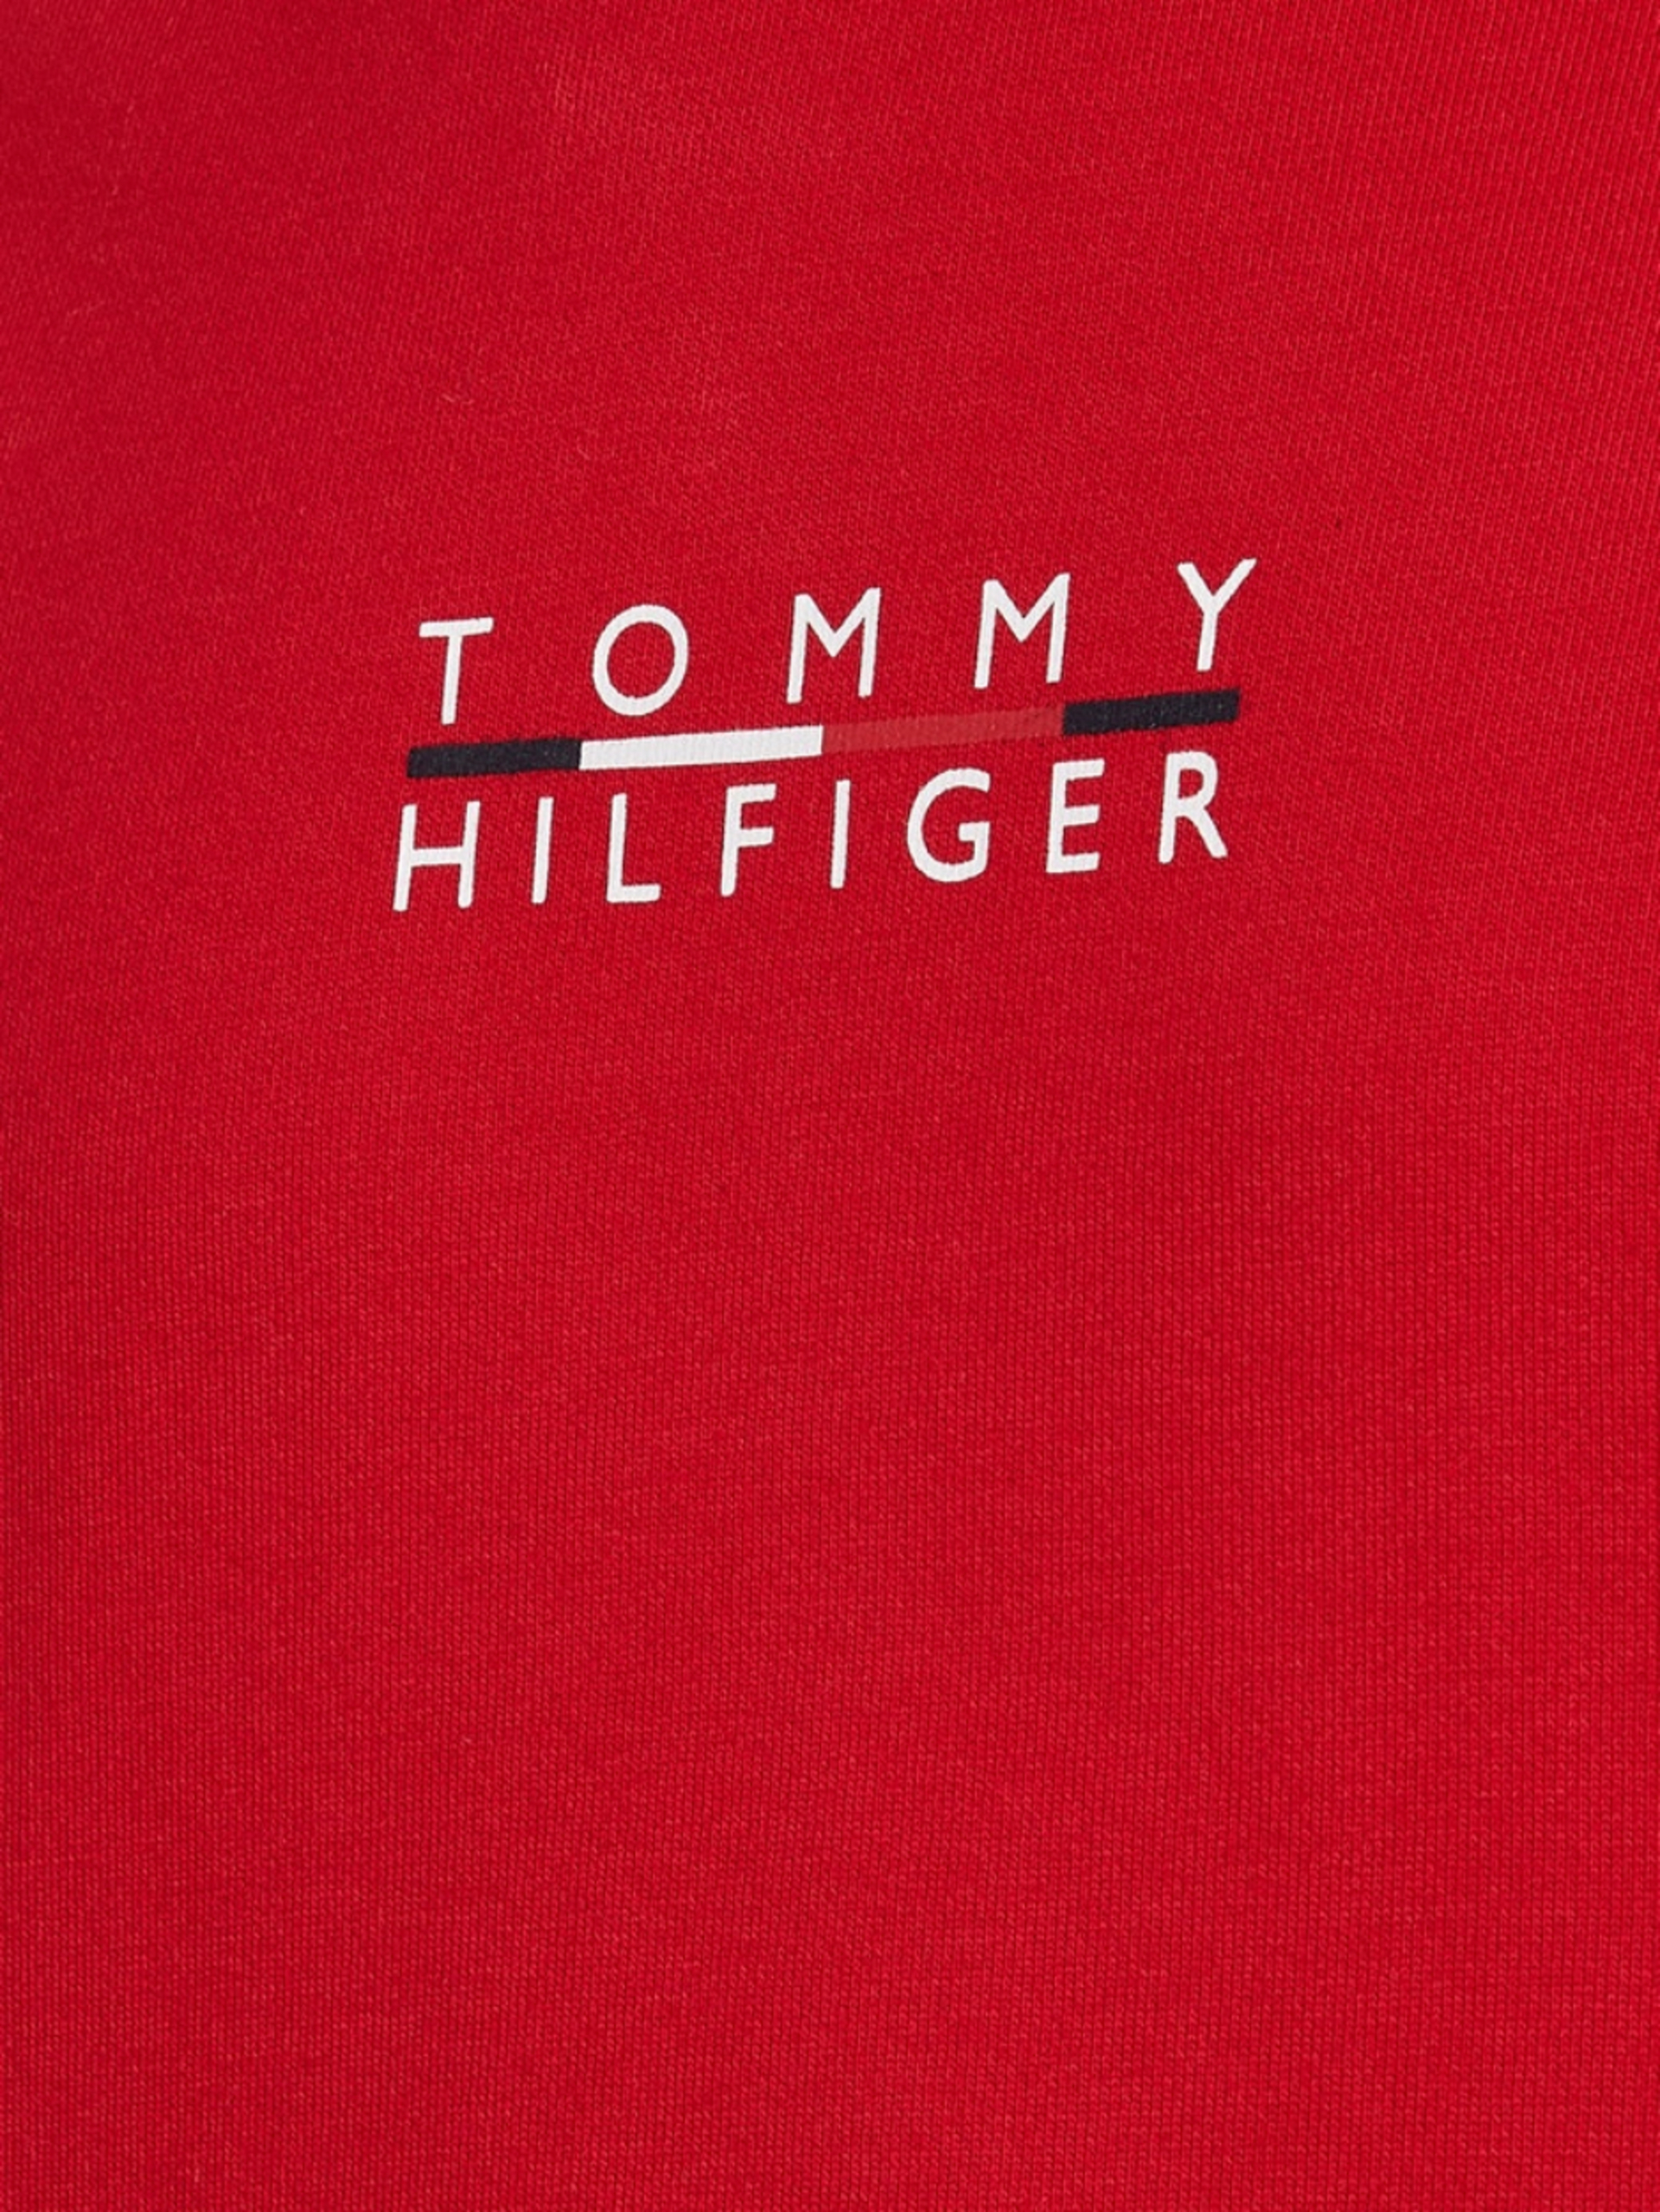 Tommy Hilfiger pánská červená mikina Square logo - S (XLG)